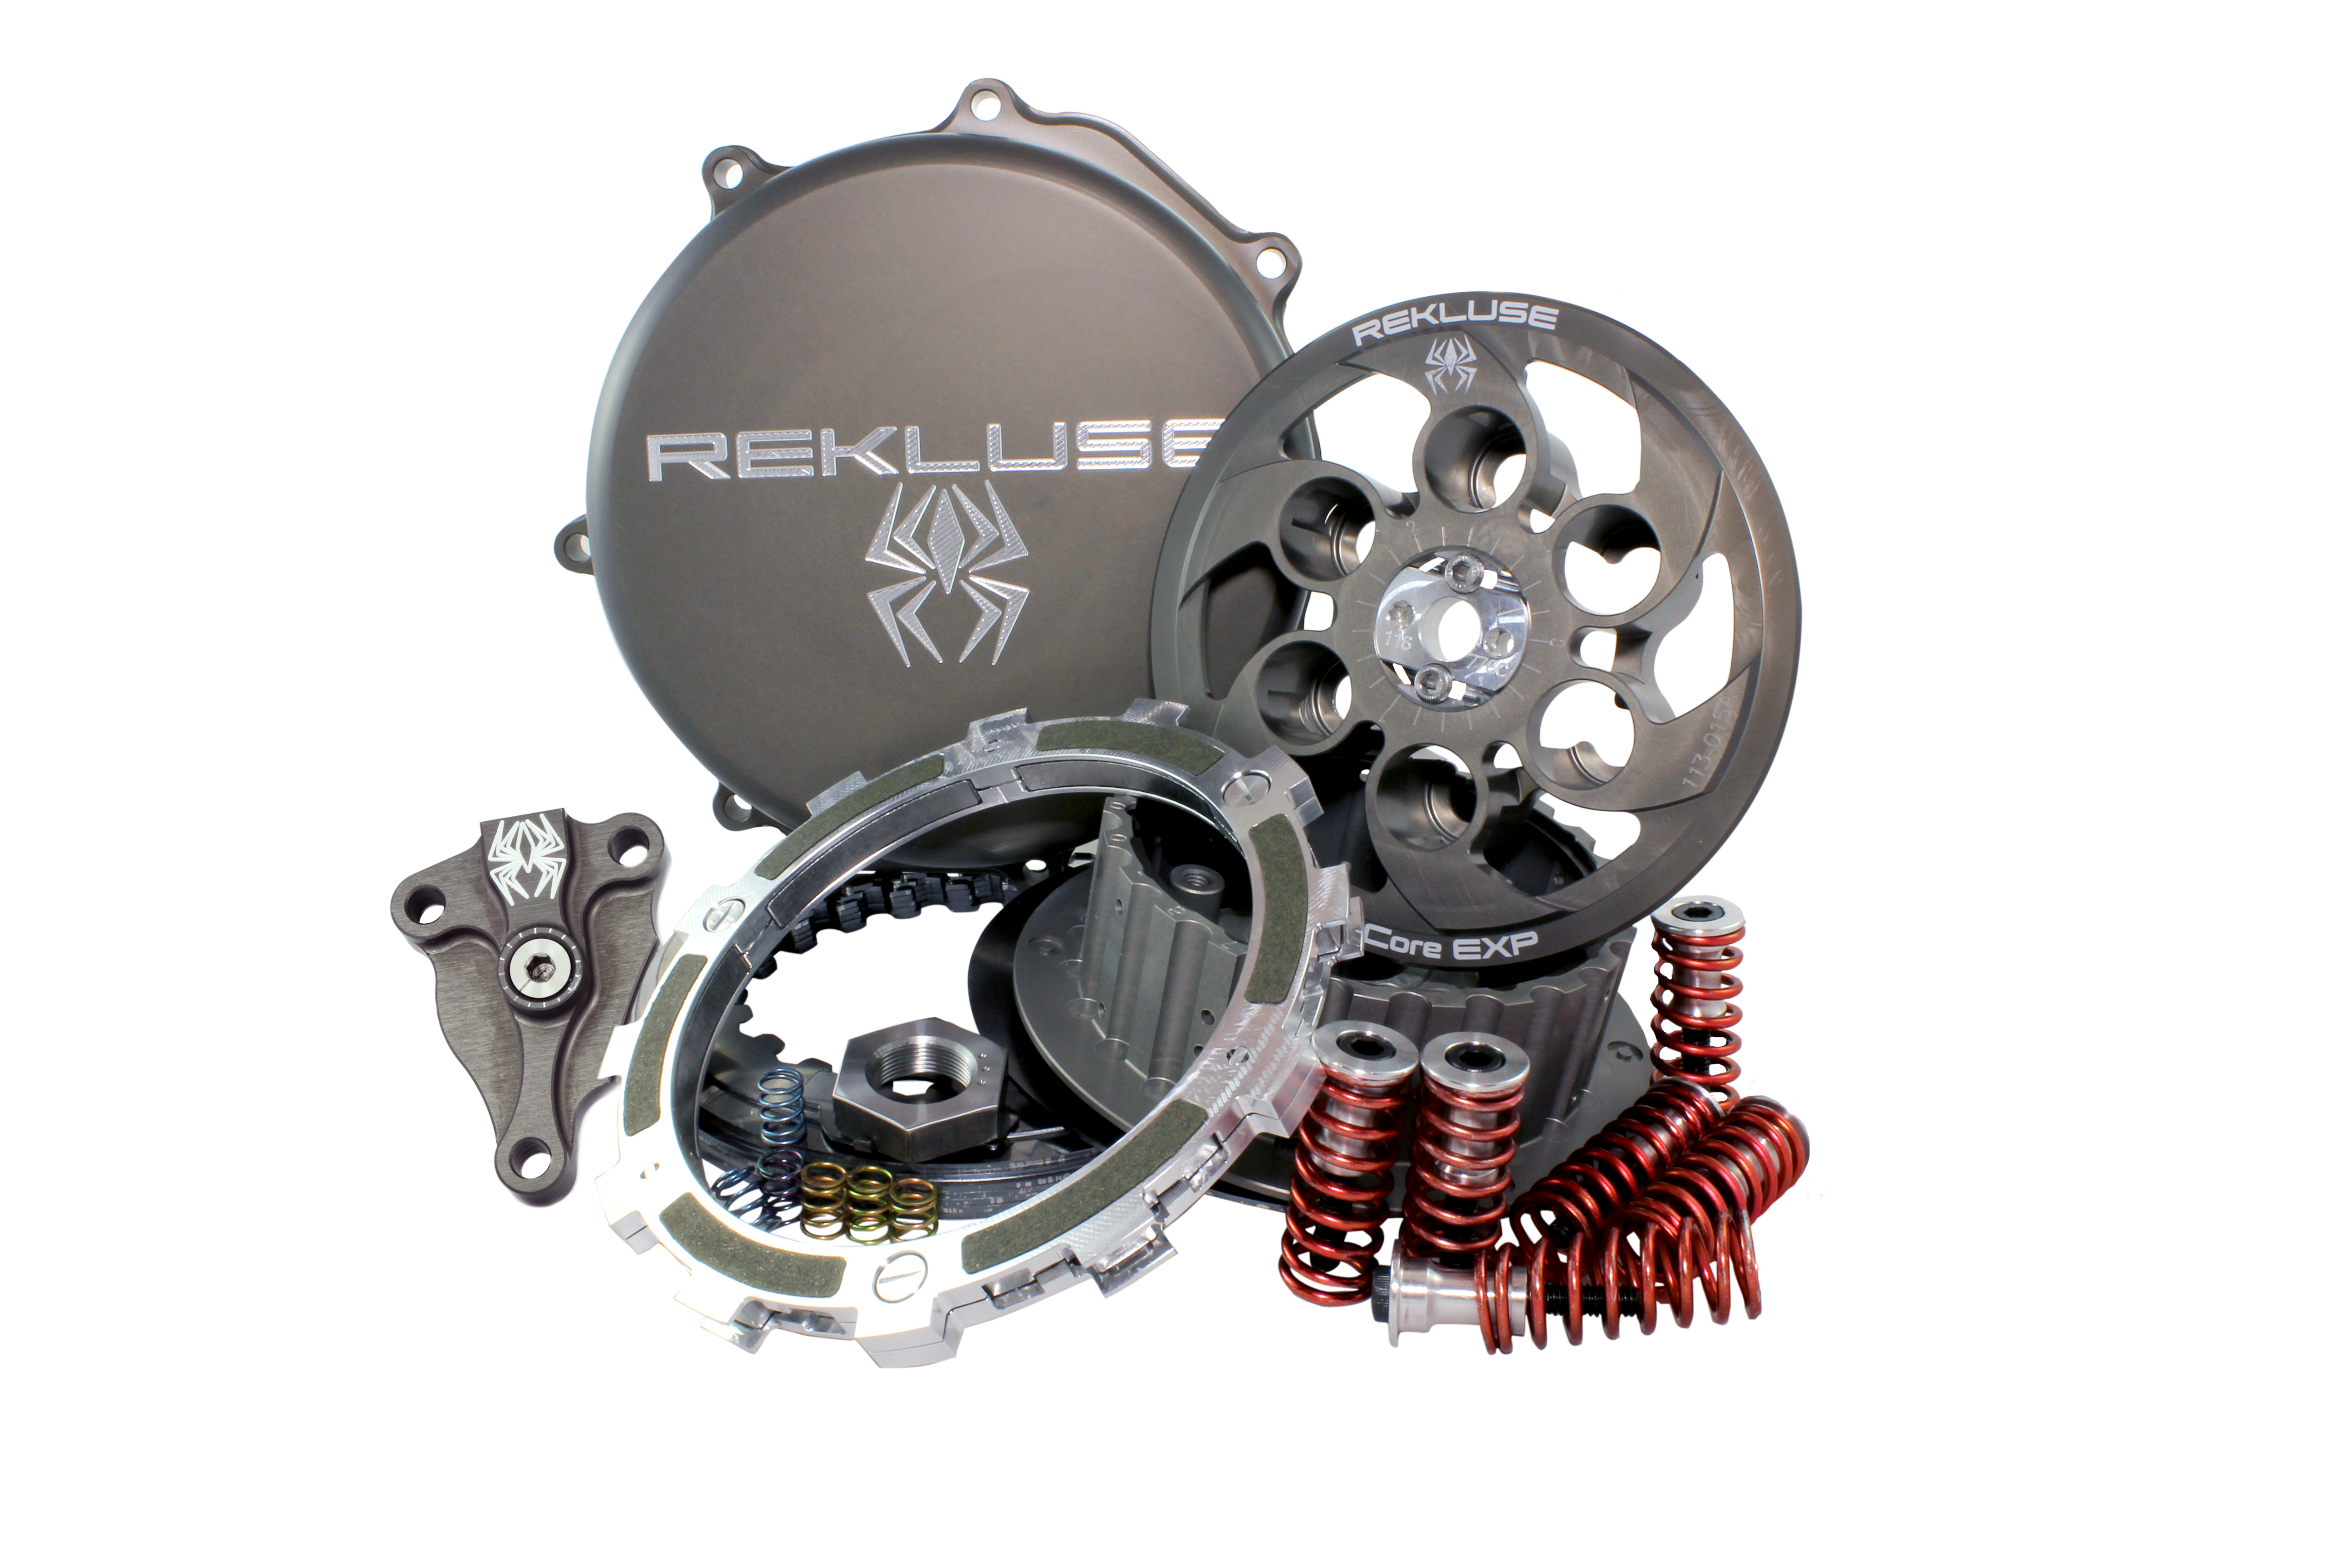 Rekluse - Core EXP 3.0 - Beta 250/300 RR (2013-17) Race Edition/X-Trainer 300 (2015-17)